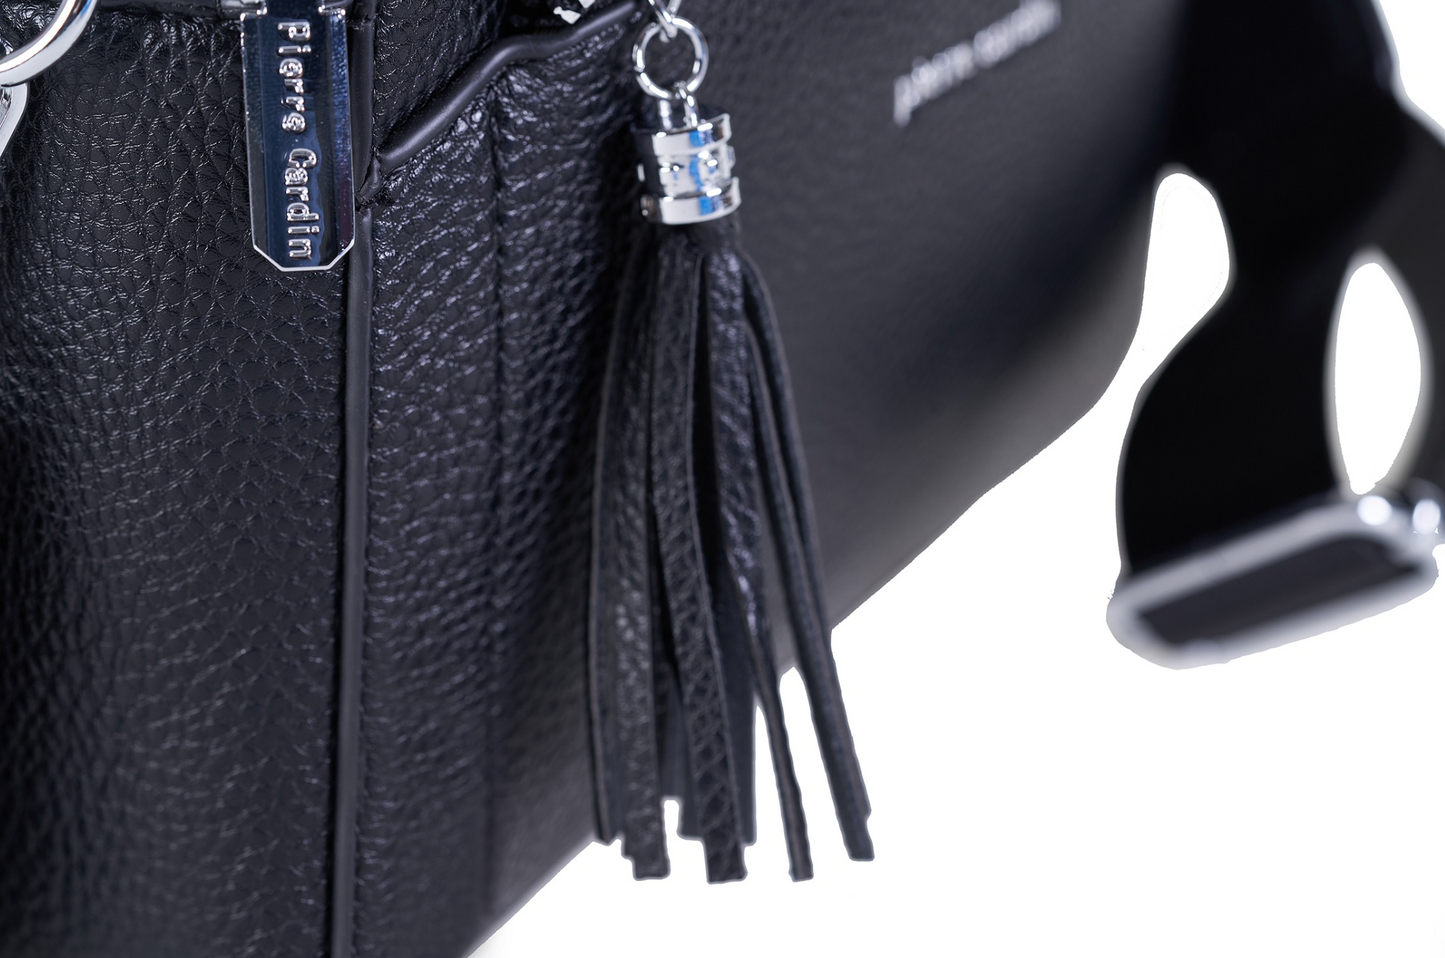 Pierre Cardin jeans handbag for women